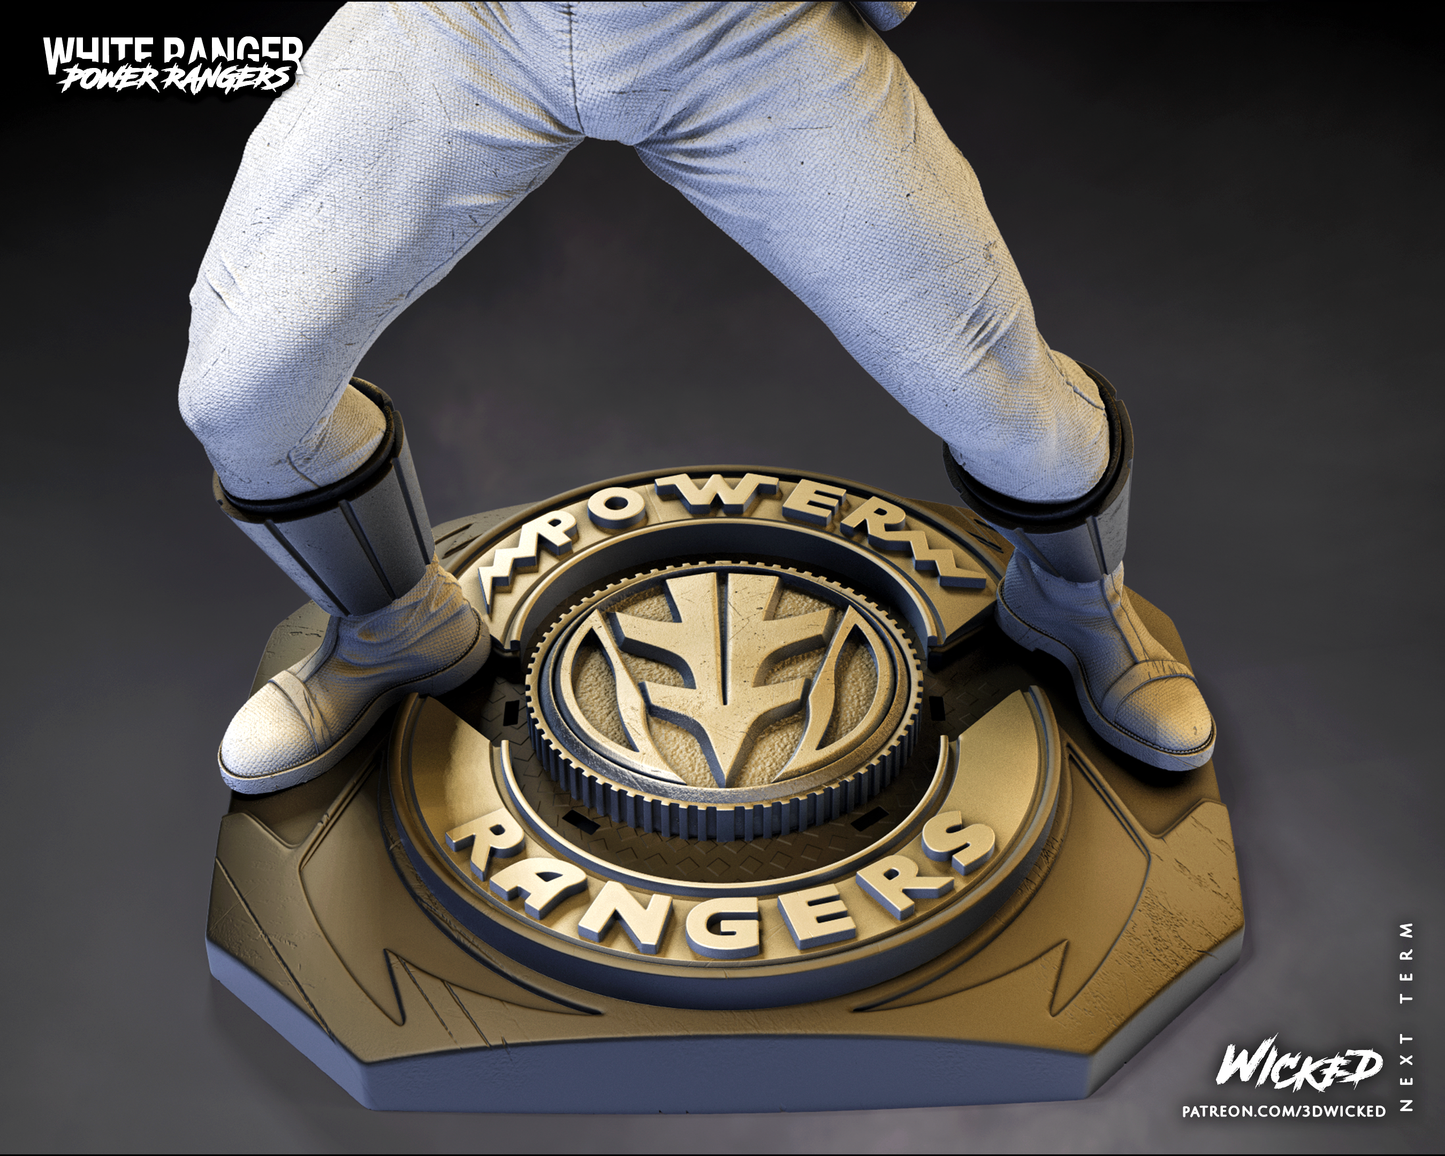 Power Rangers White Ranger Statue